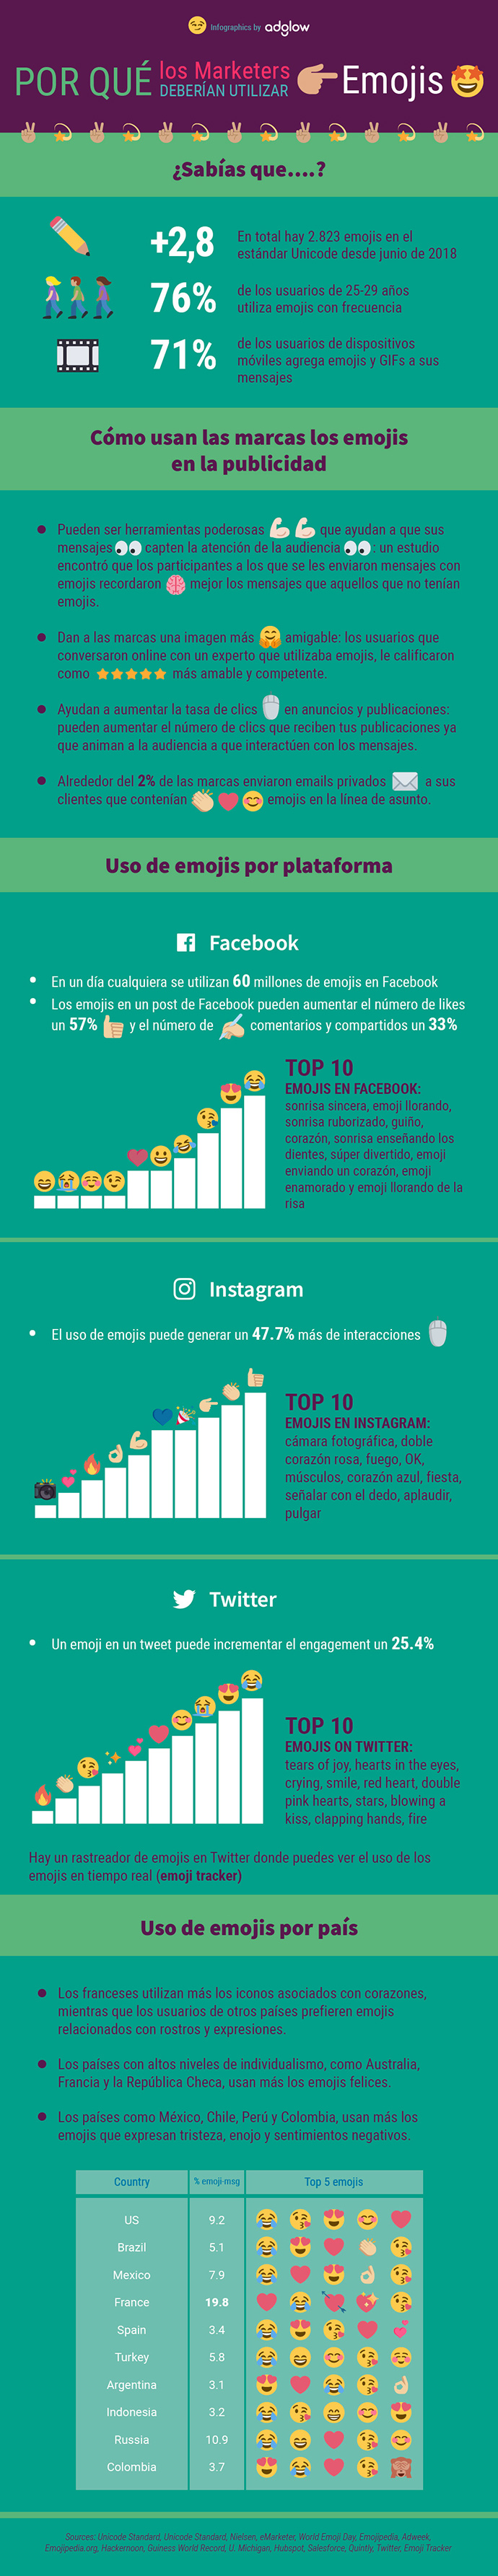 Infografía sobre las ventajas y beneficios que la utilización de emojis reporta a una estrategia de marketing. 